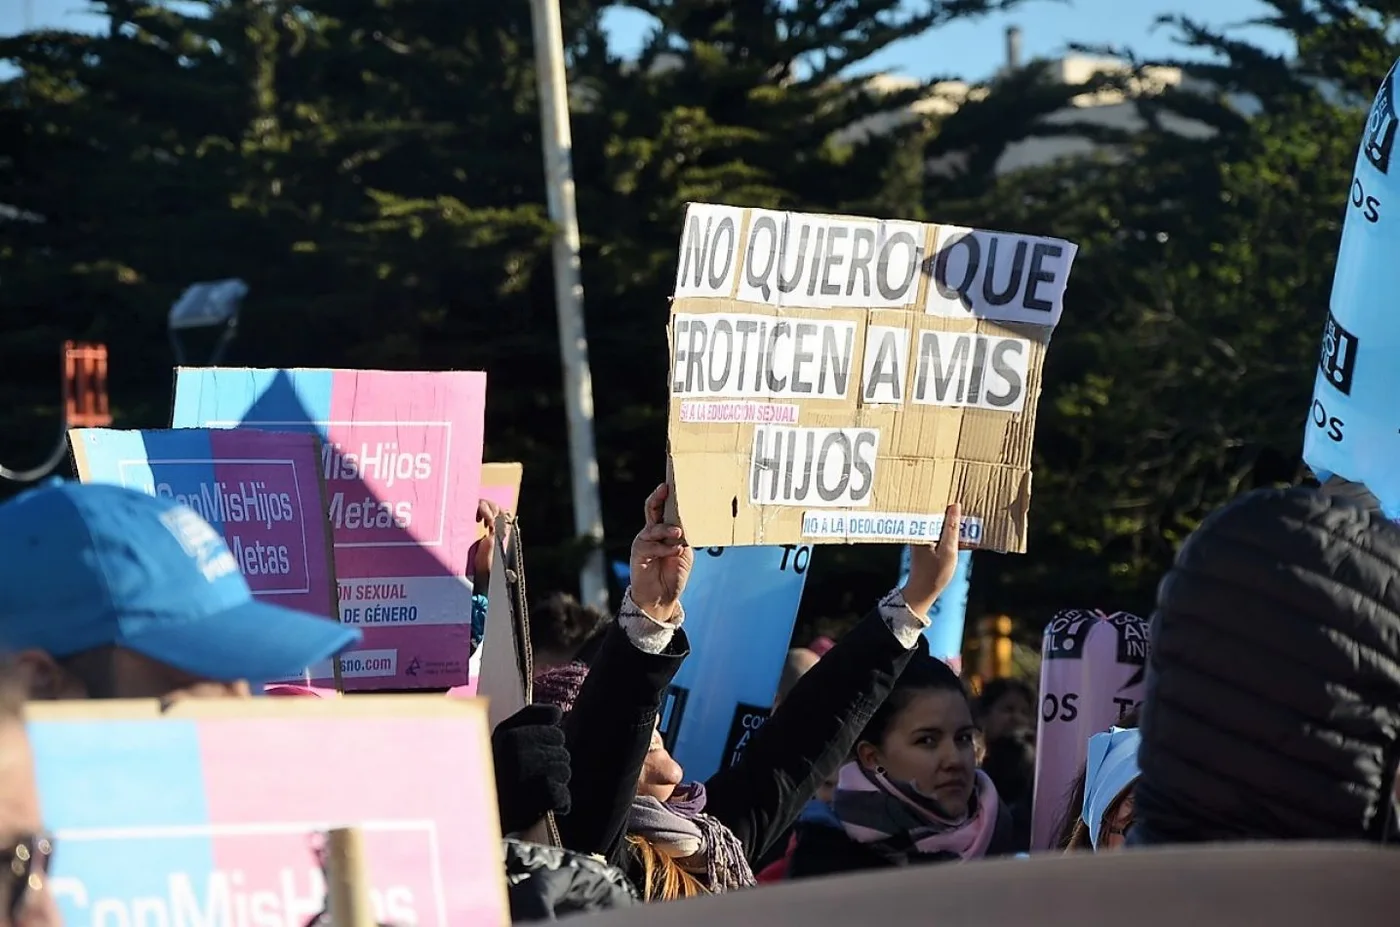 Marcha contra la educación sexual con ideología de género